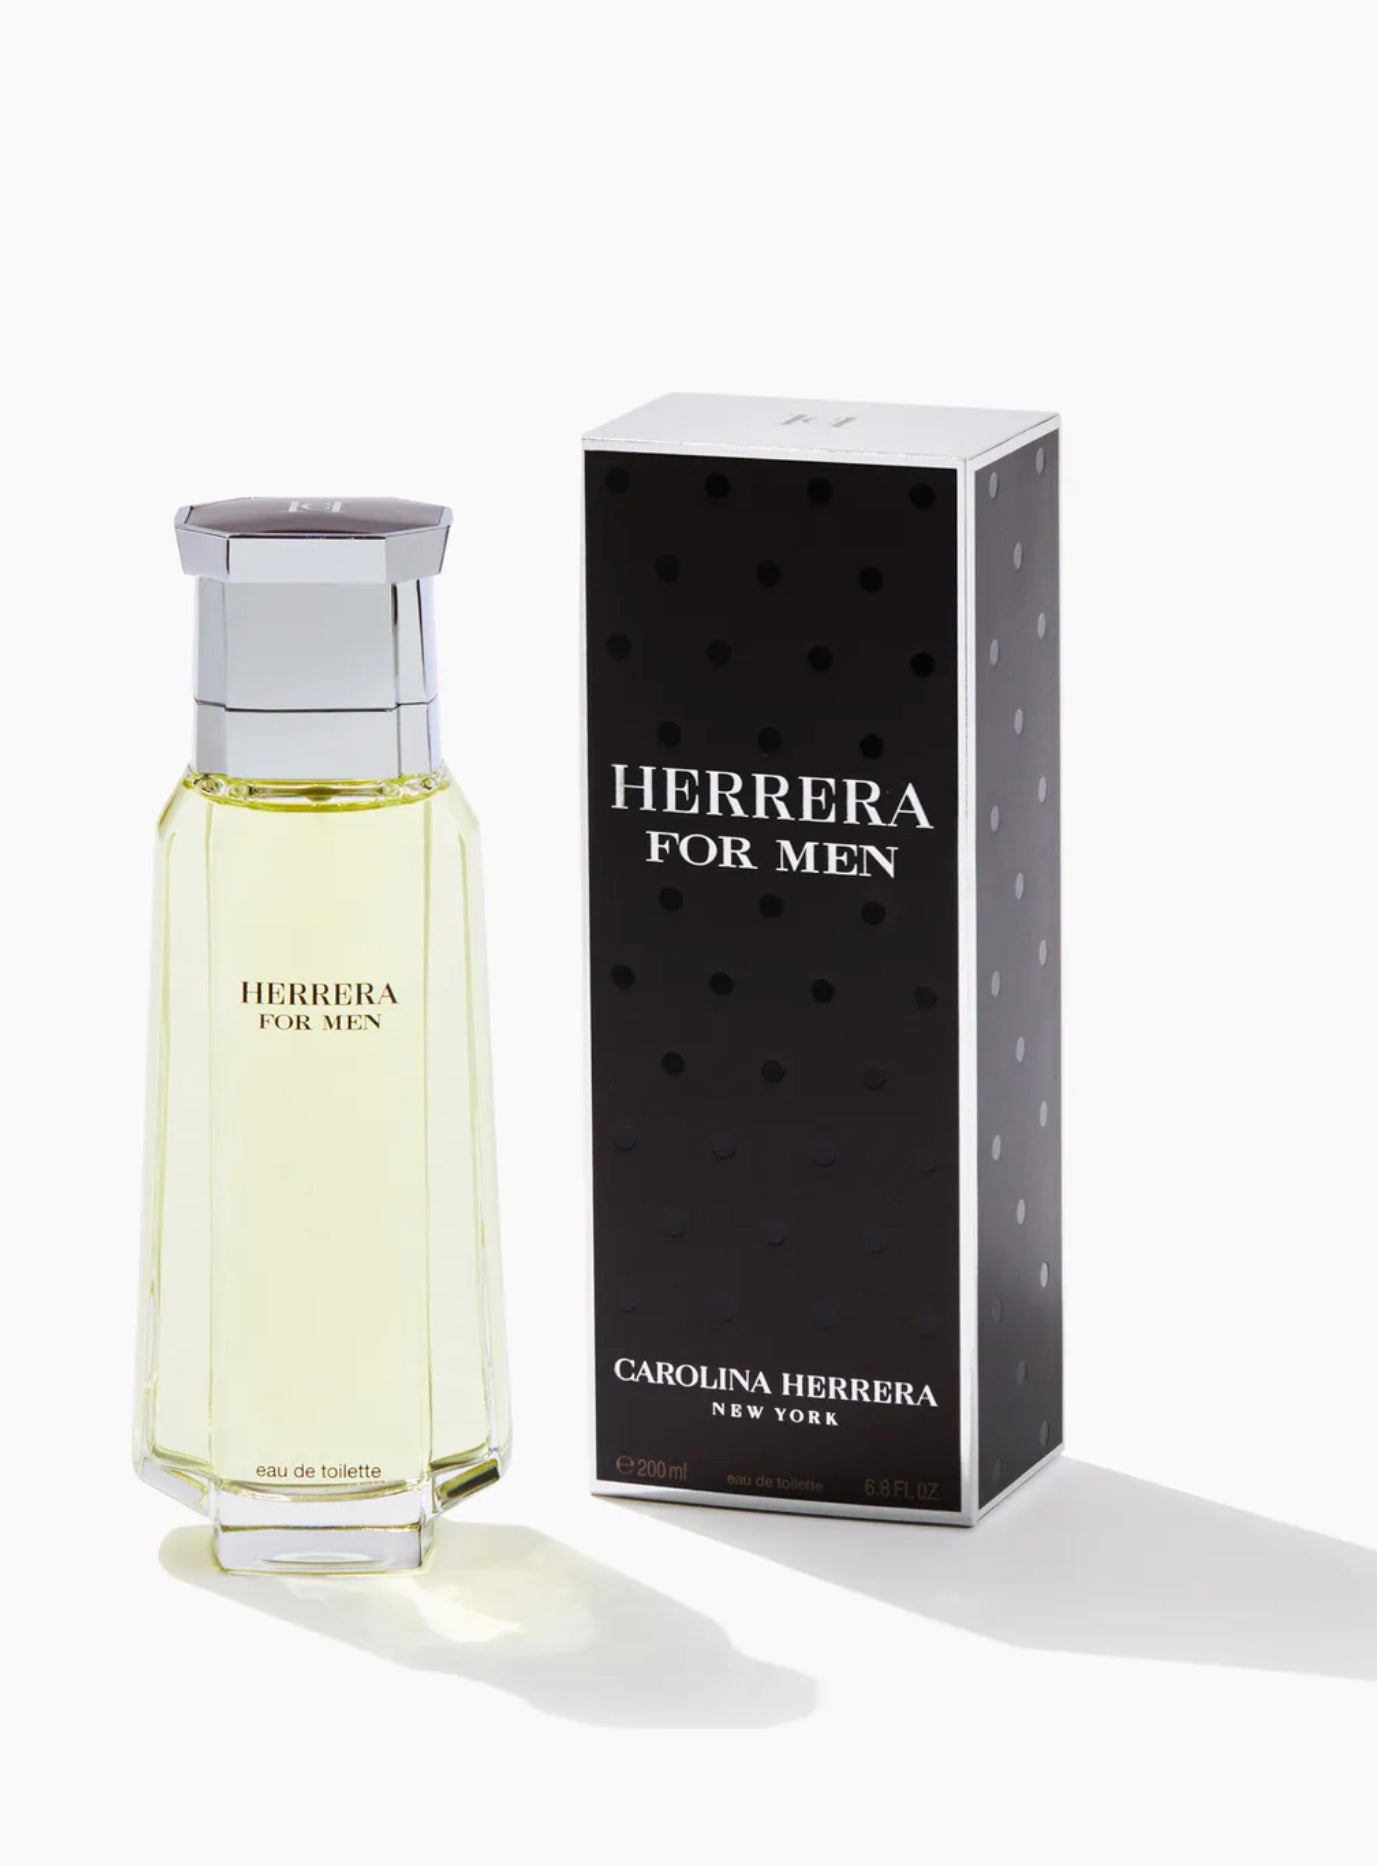 Herrera for Men by Carolina Herrera Eau de Toilette